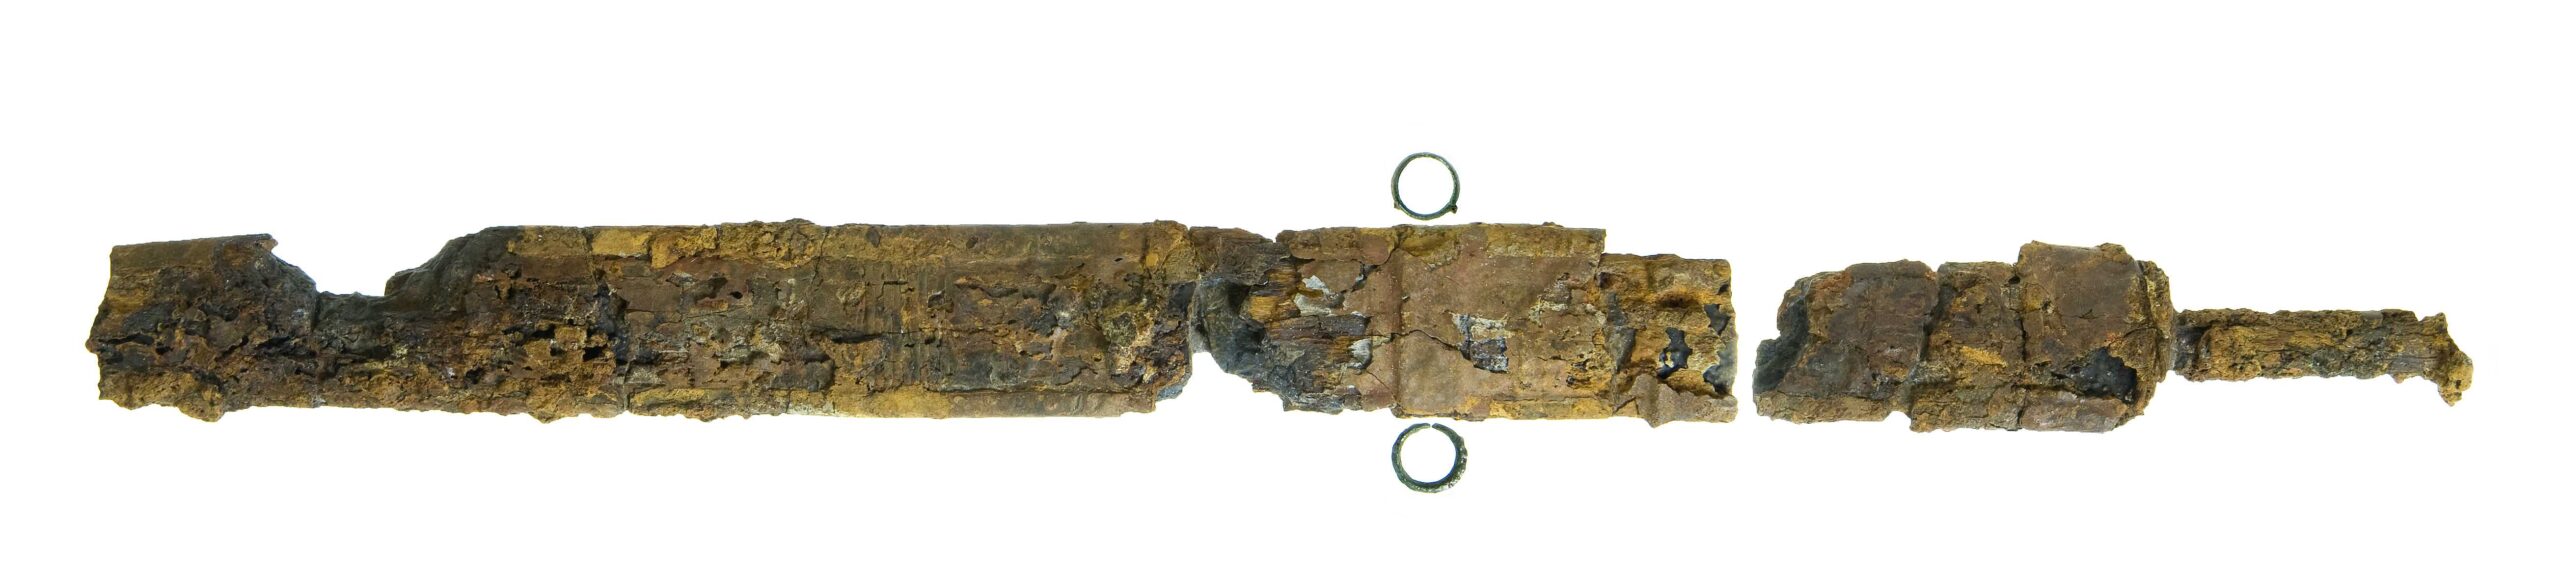 חרב רומית שהתגלתה בחפירות תעלת הניקוז בעיר דוד